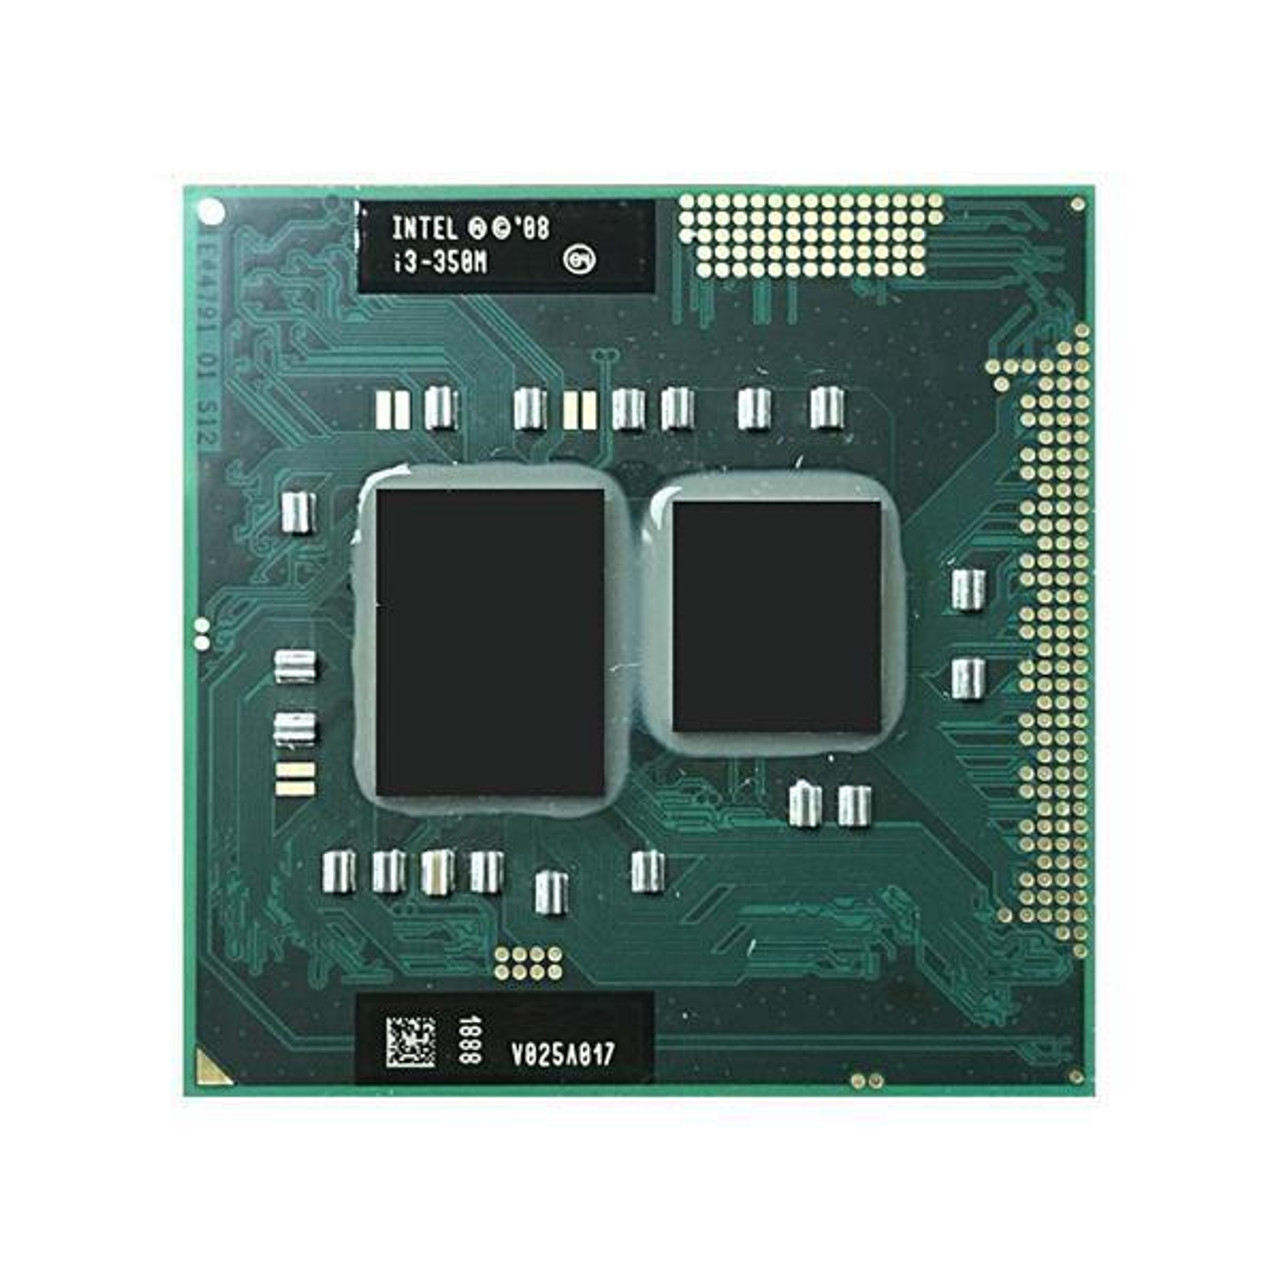 Dell 2.26GHz 2.50GT/s DMI 3MB L3 Cache Intel Core i3-350M Dual-Core Mobile Processor Upgrade